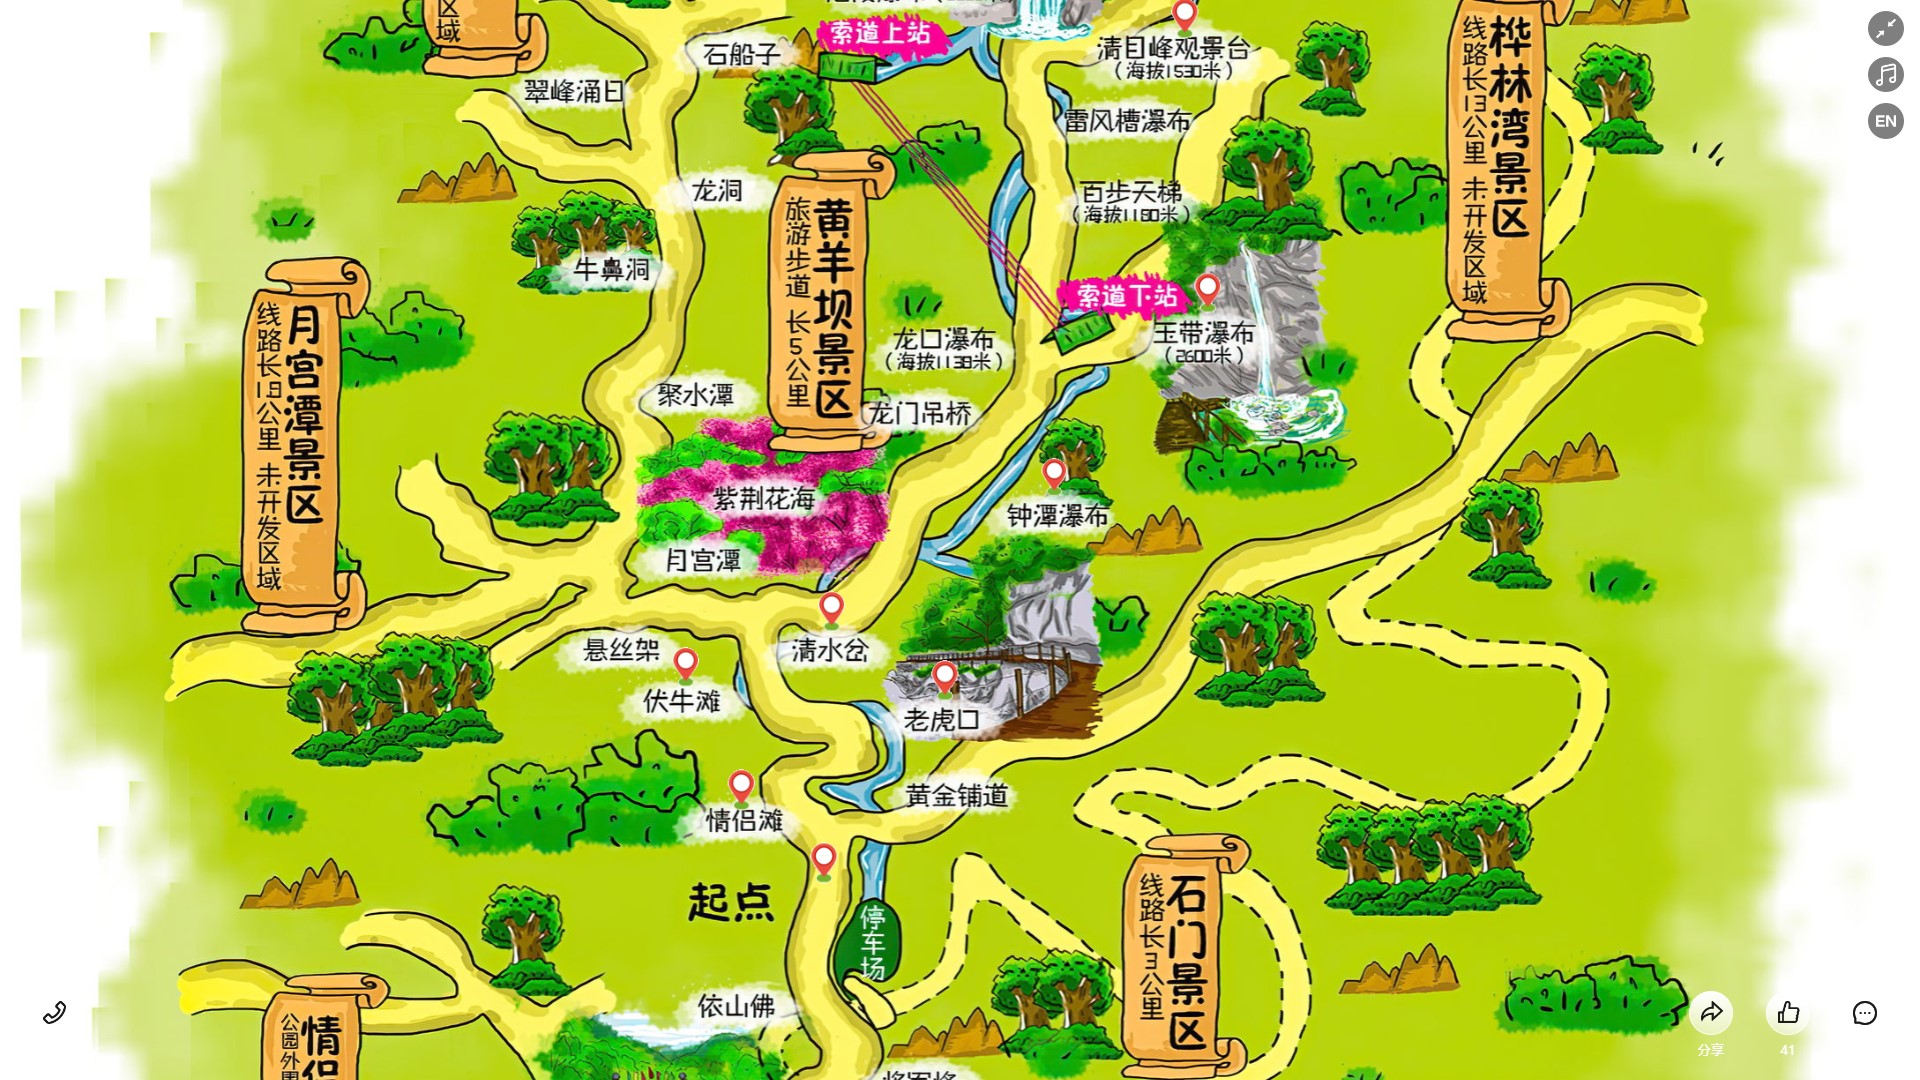 荣邦乡景区导览系统